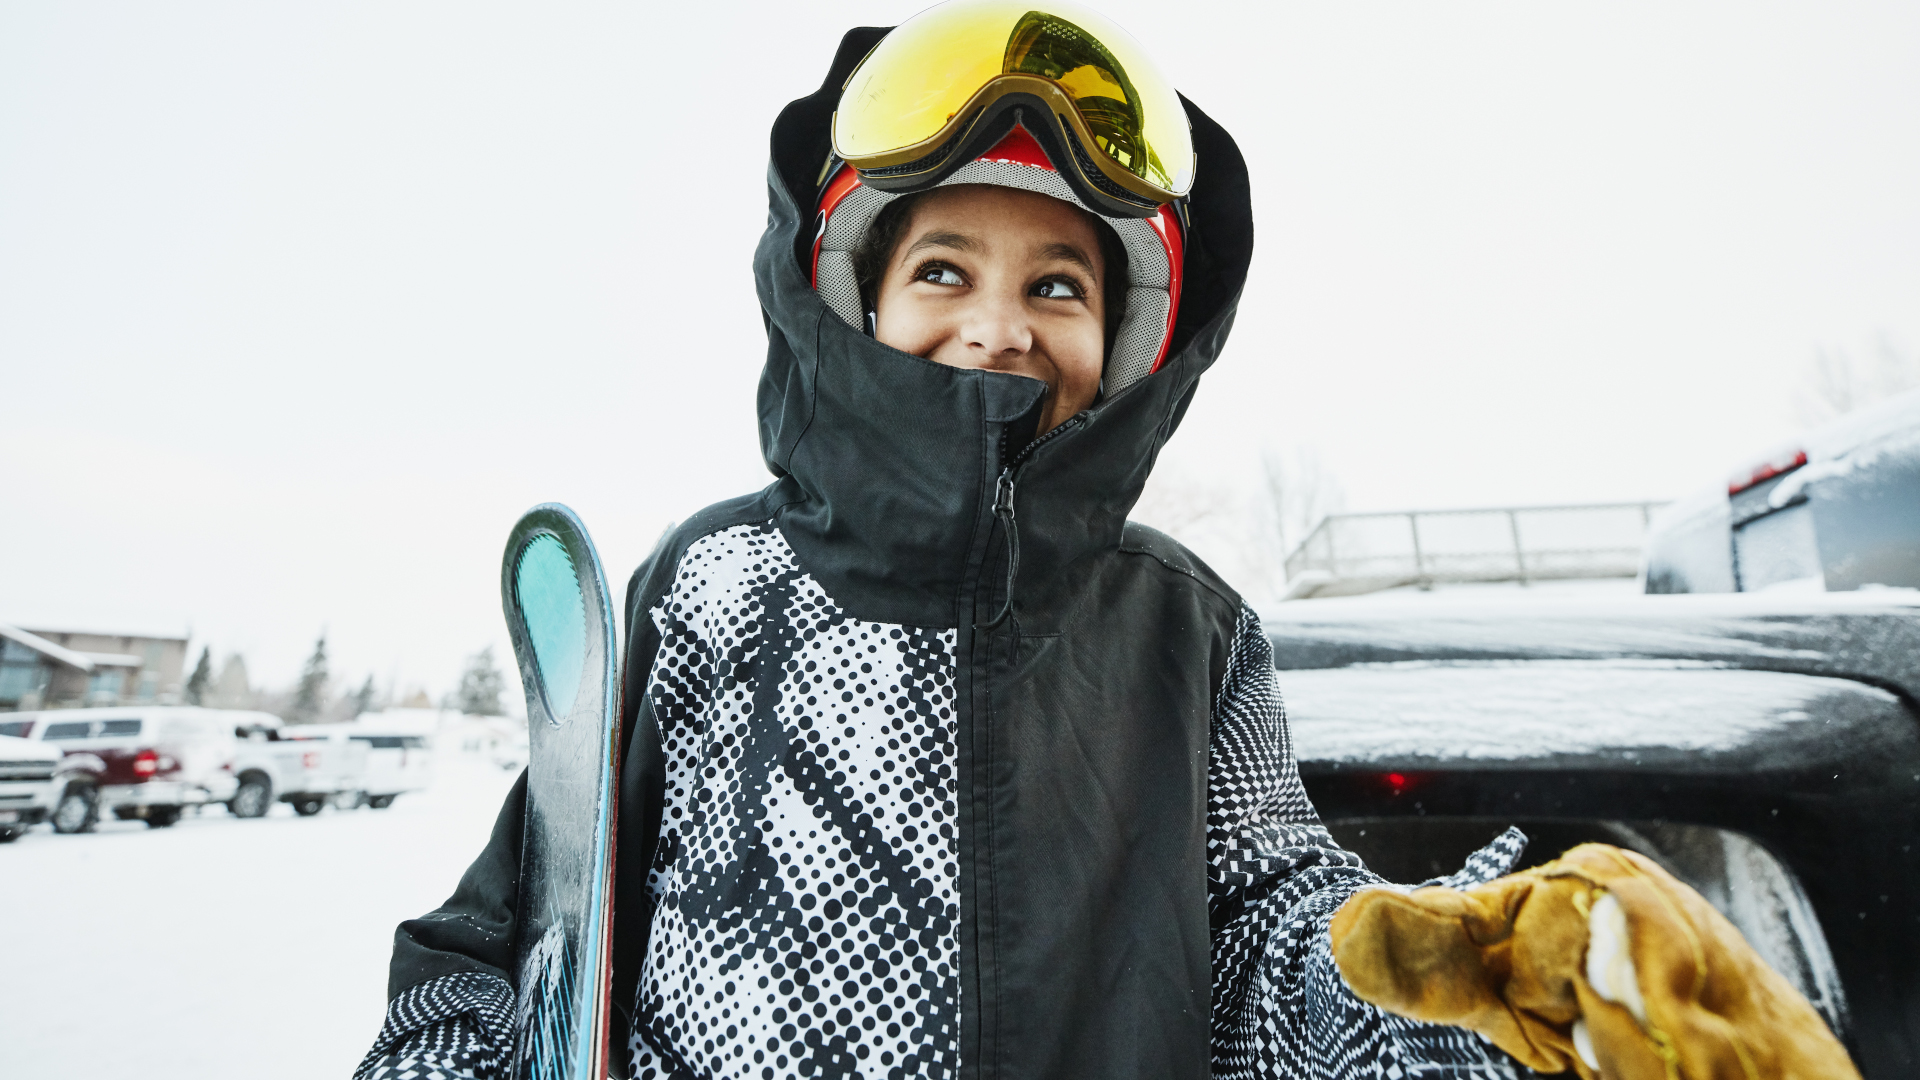 Una mujer sonríe en una estación de esquí mientras se prepara para esquiar